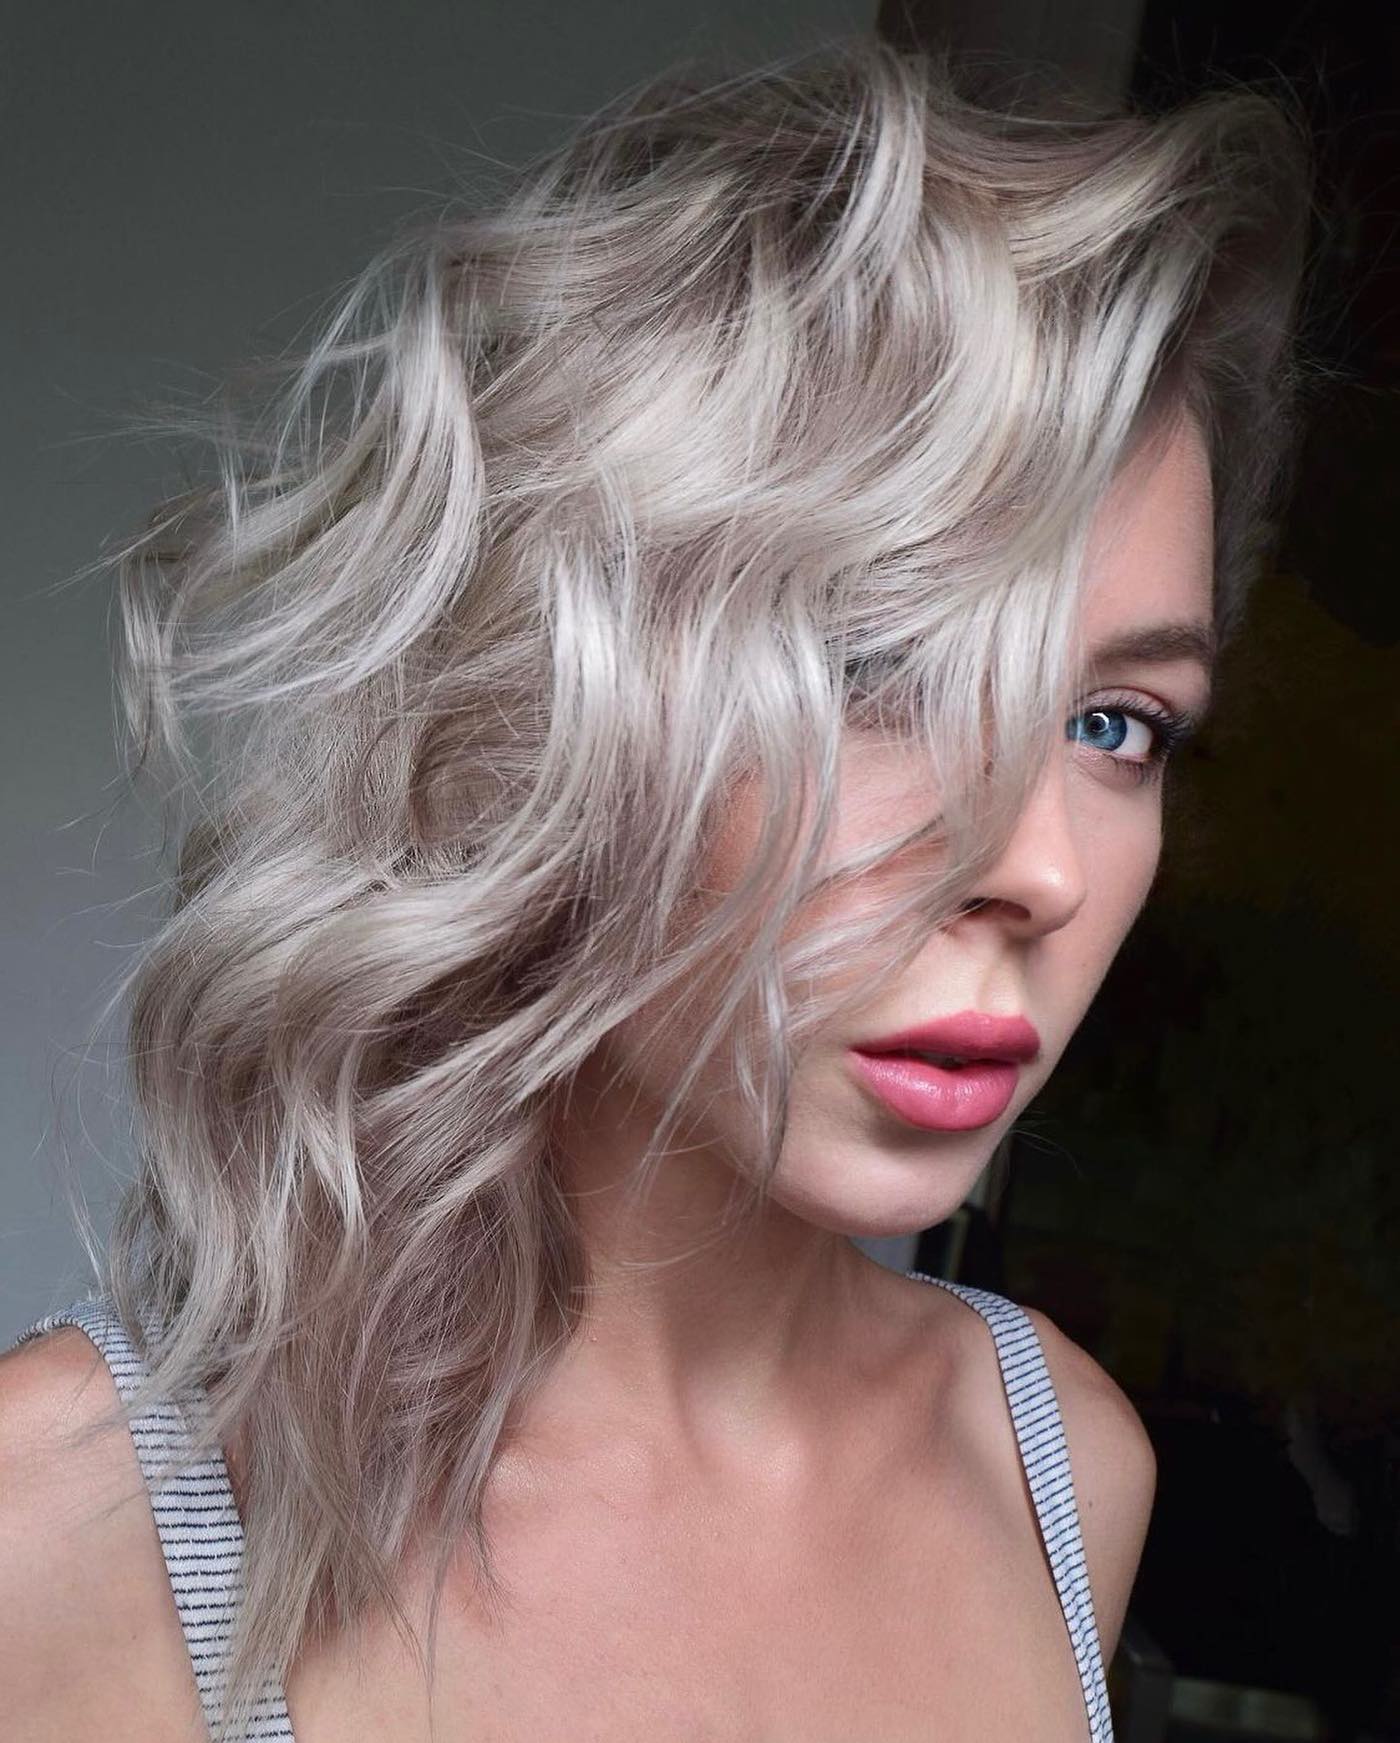 Blonde coloring: 30 bold, elegant options